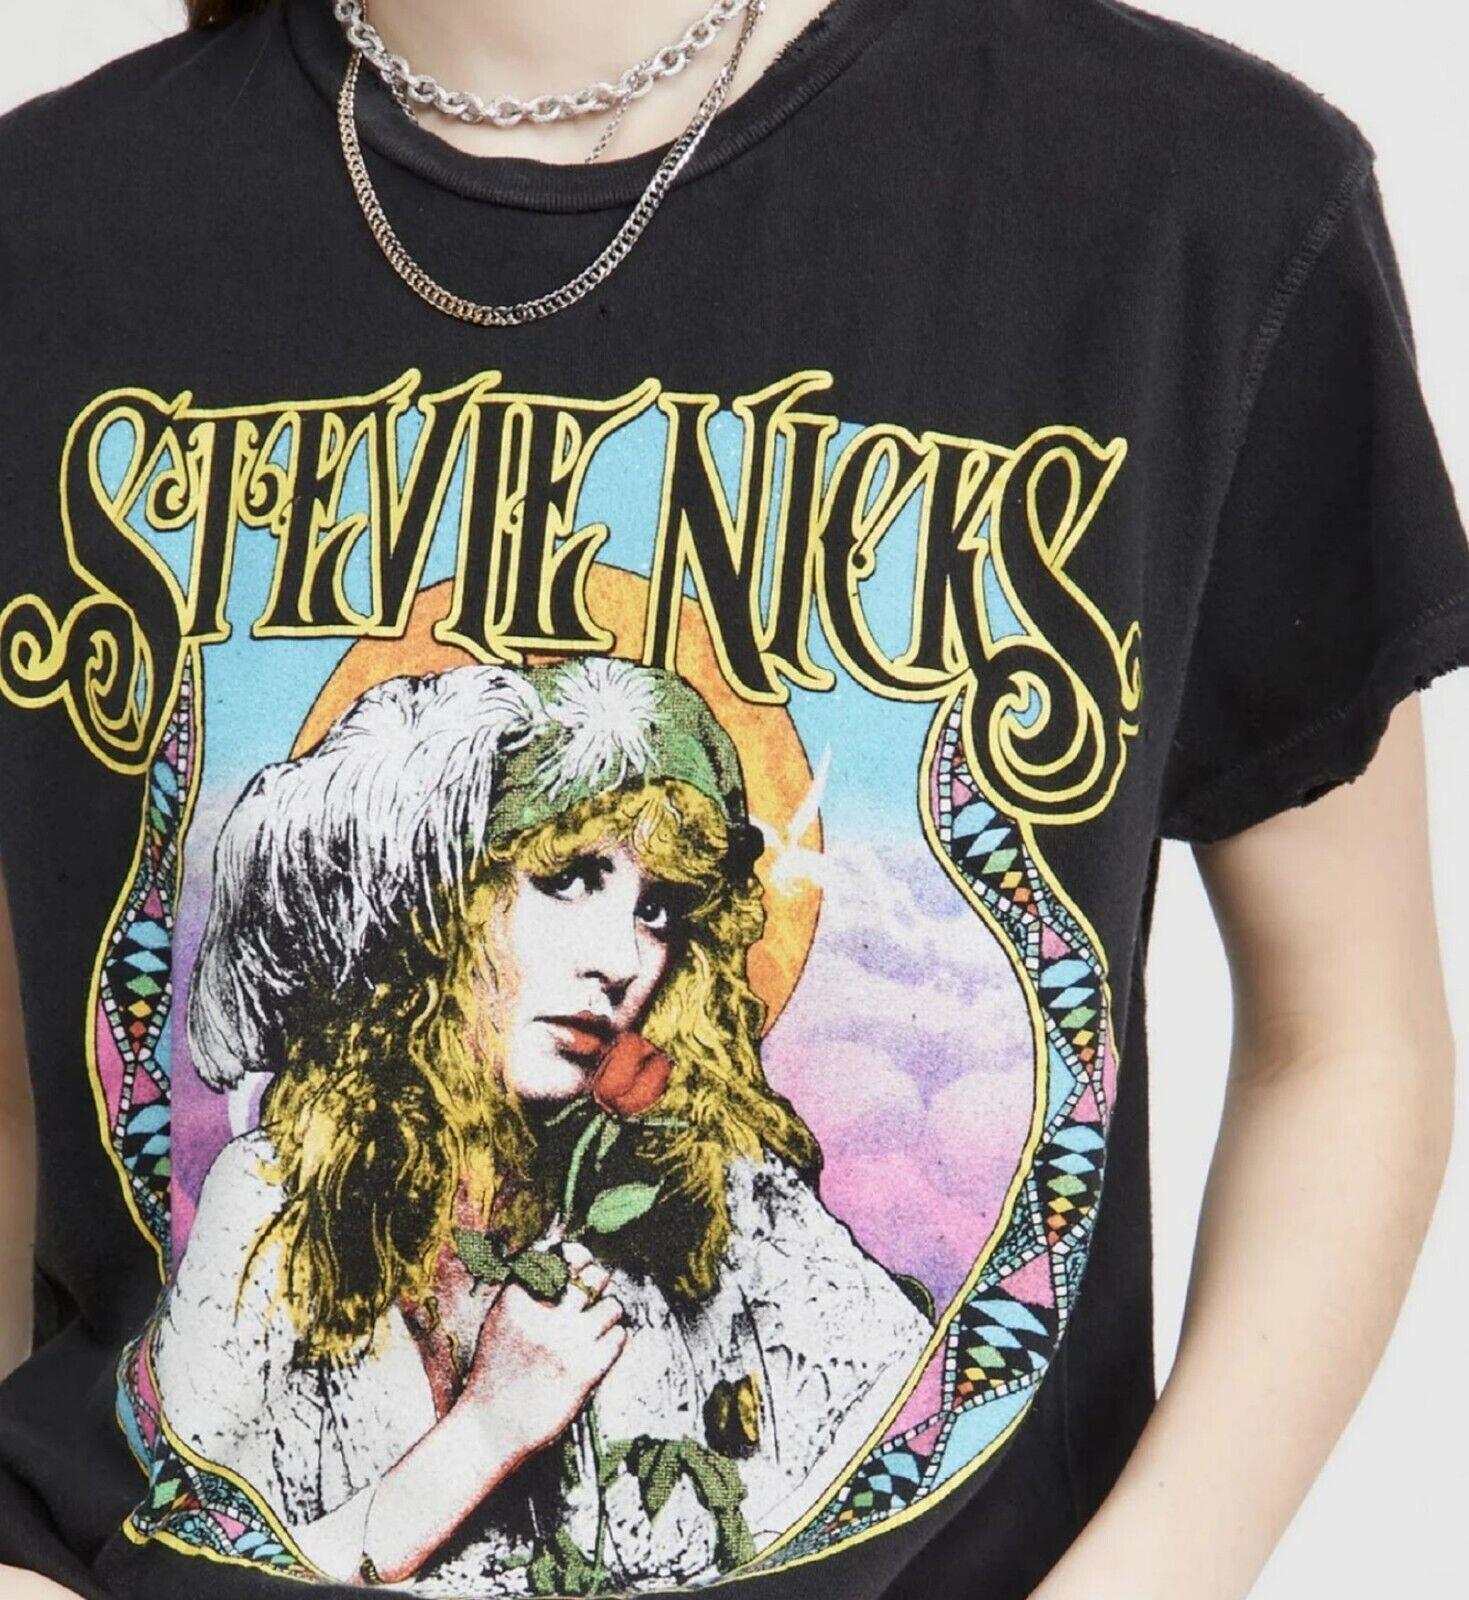 Stevie Nicks shirt  rock band t-shirt  Stevie Nicks unisex tshirt